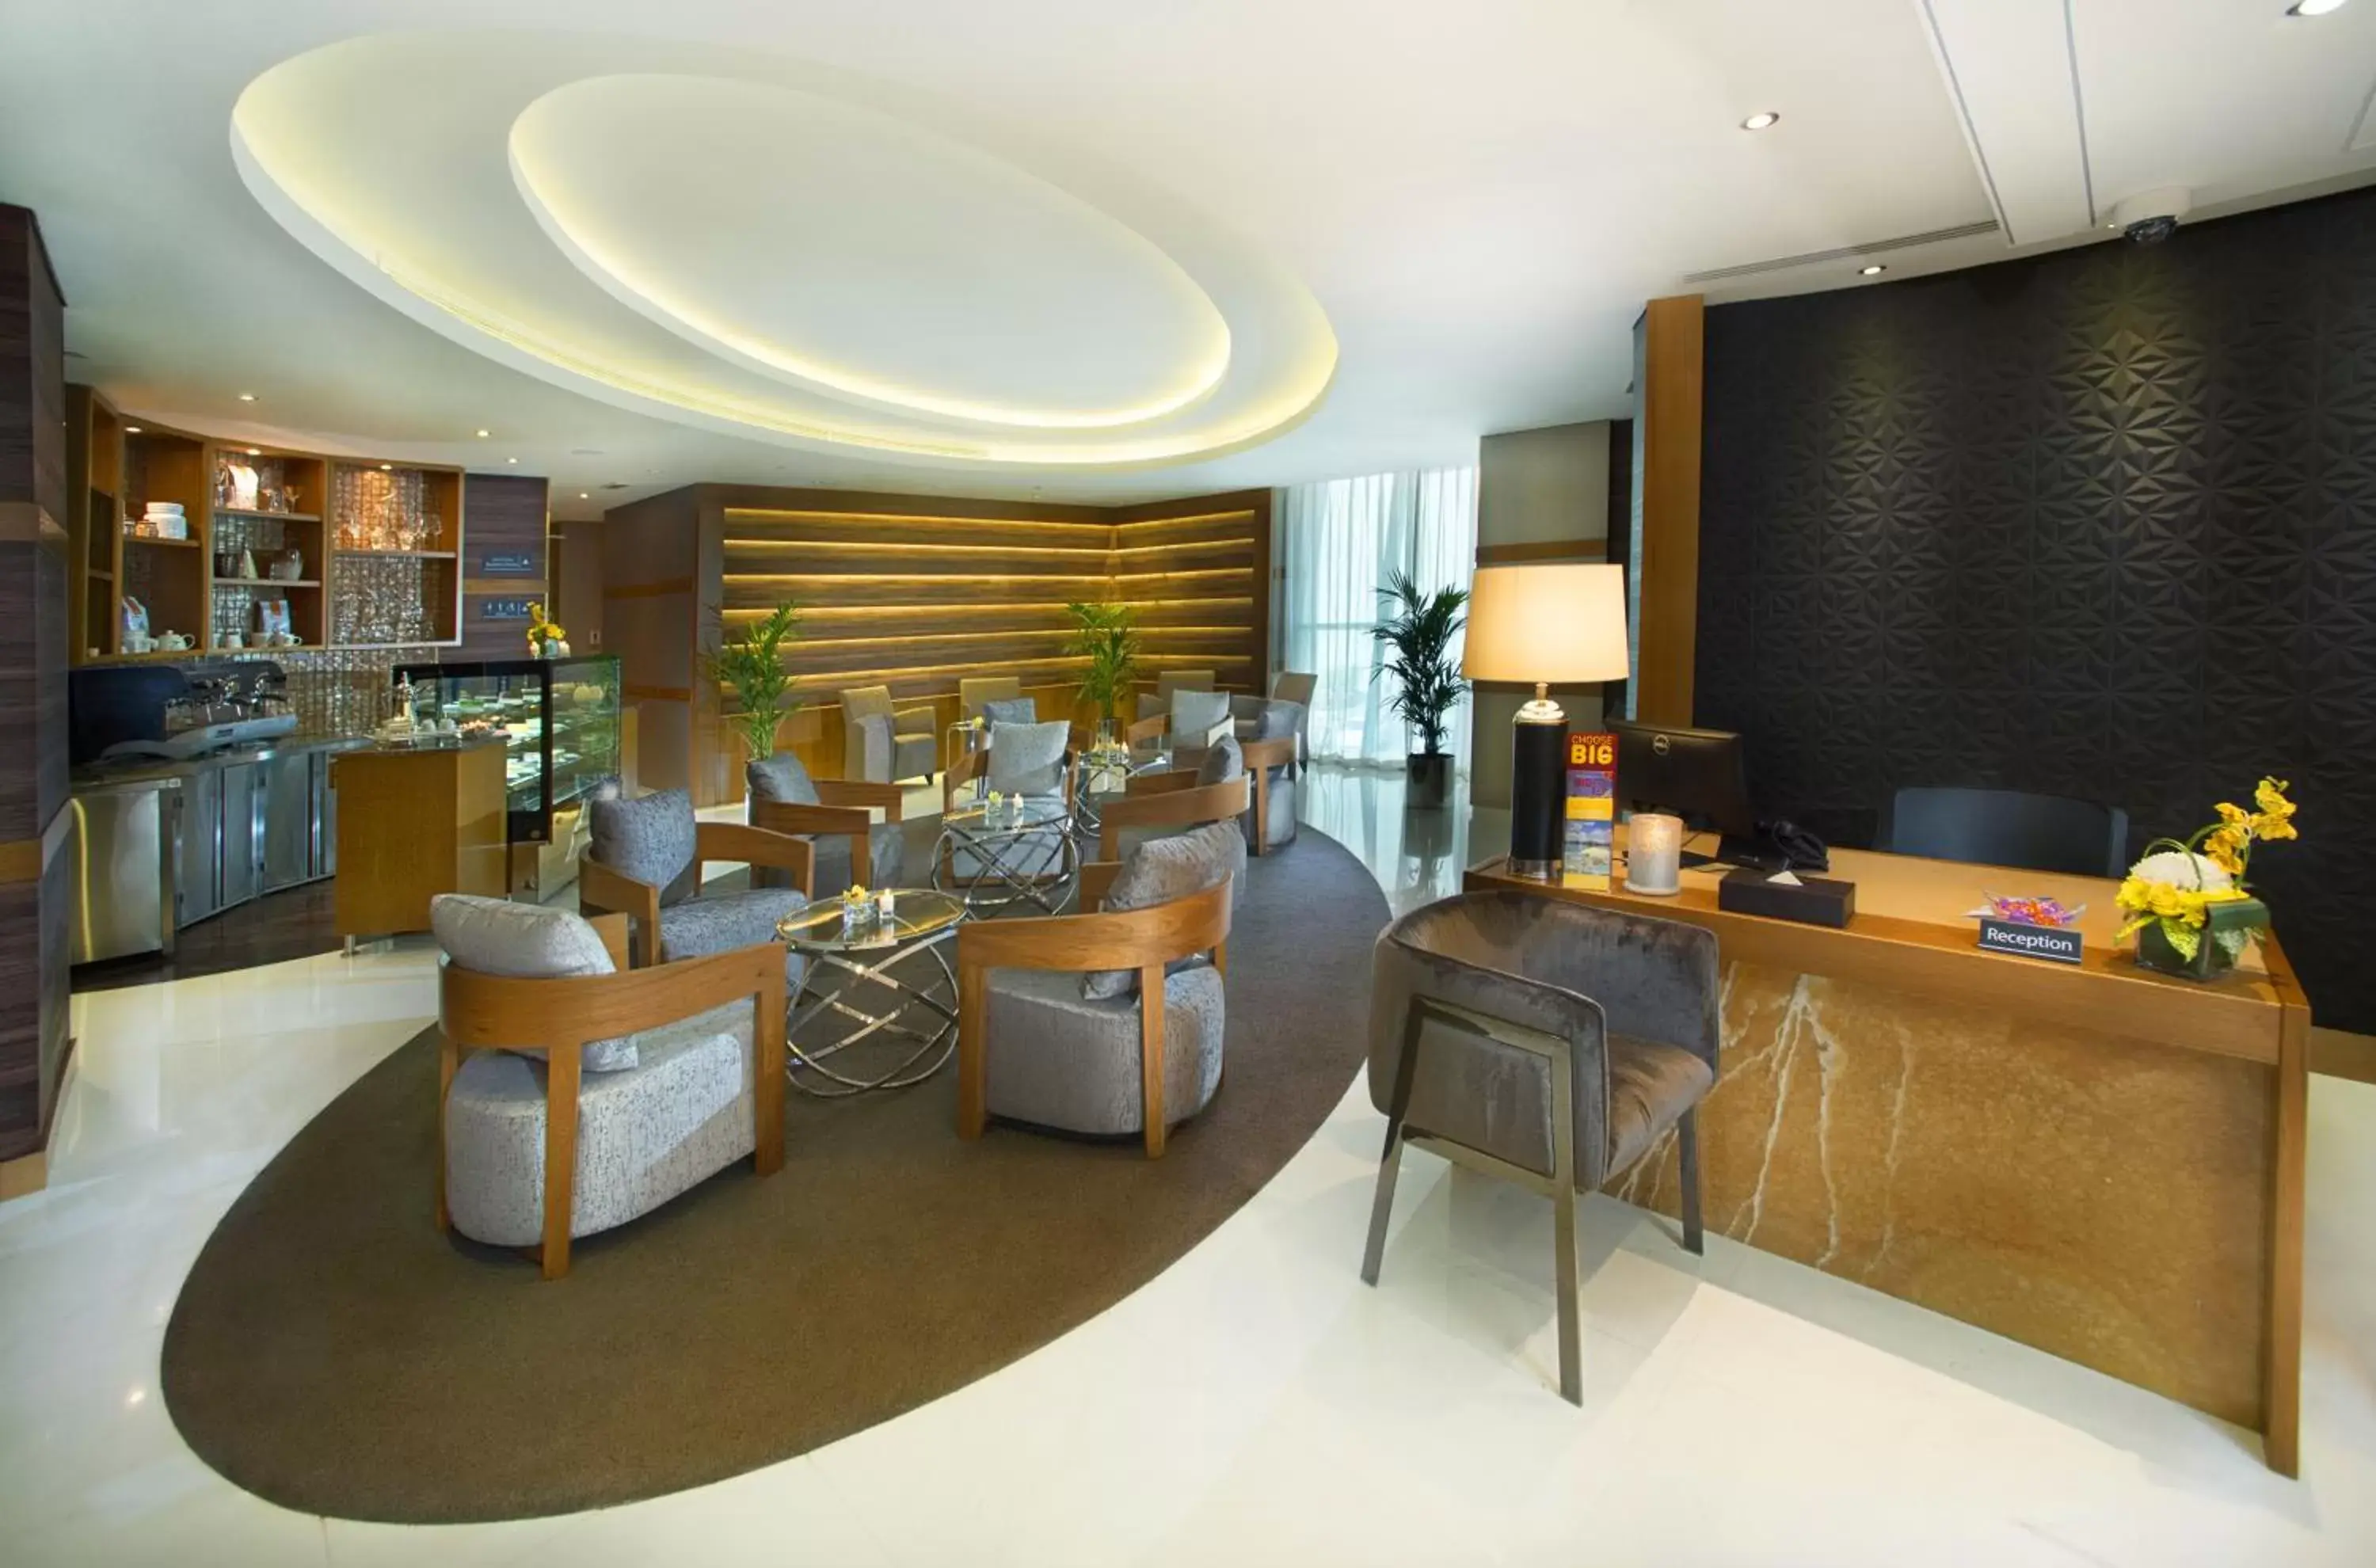 Lounge or bar, Lobby/Reception in TRYP by Wyndham Abu Dhabi City Center